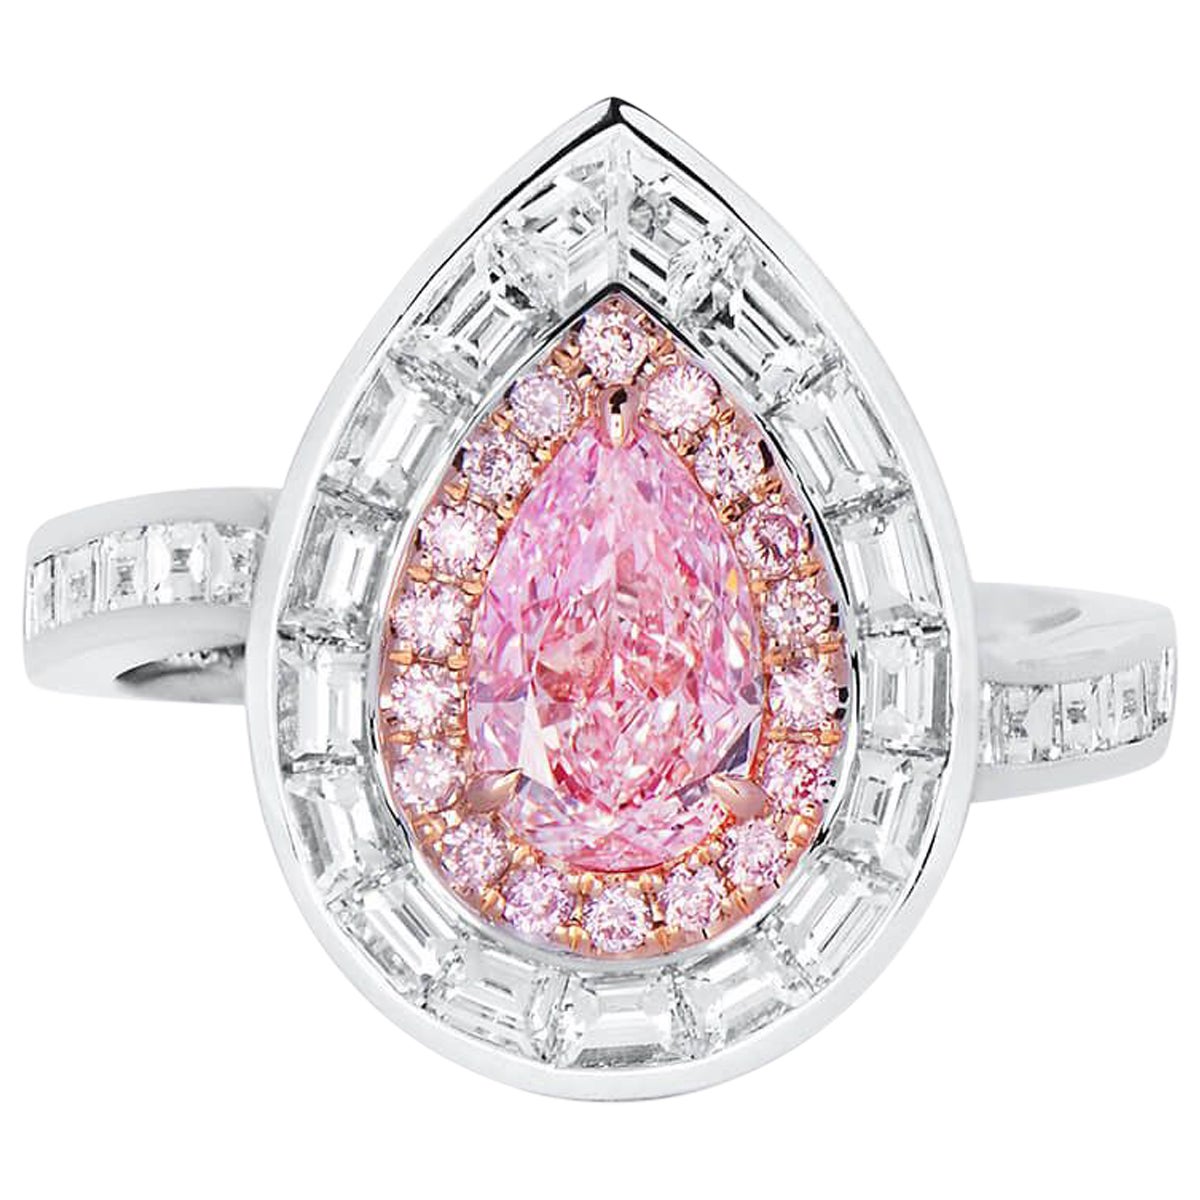 2.31 Carat Fancy Pink Diamond Ring 18 Karat White Gold GIA Certified For Sale